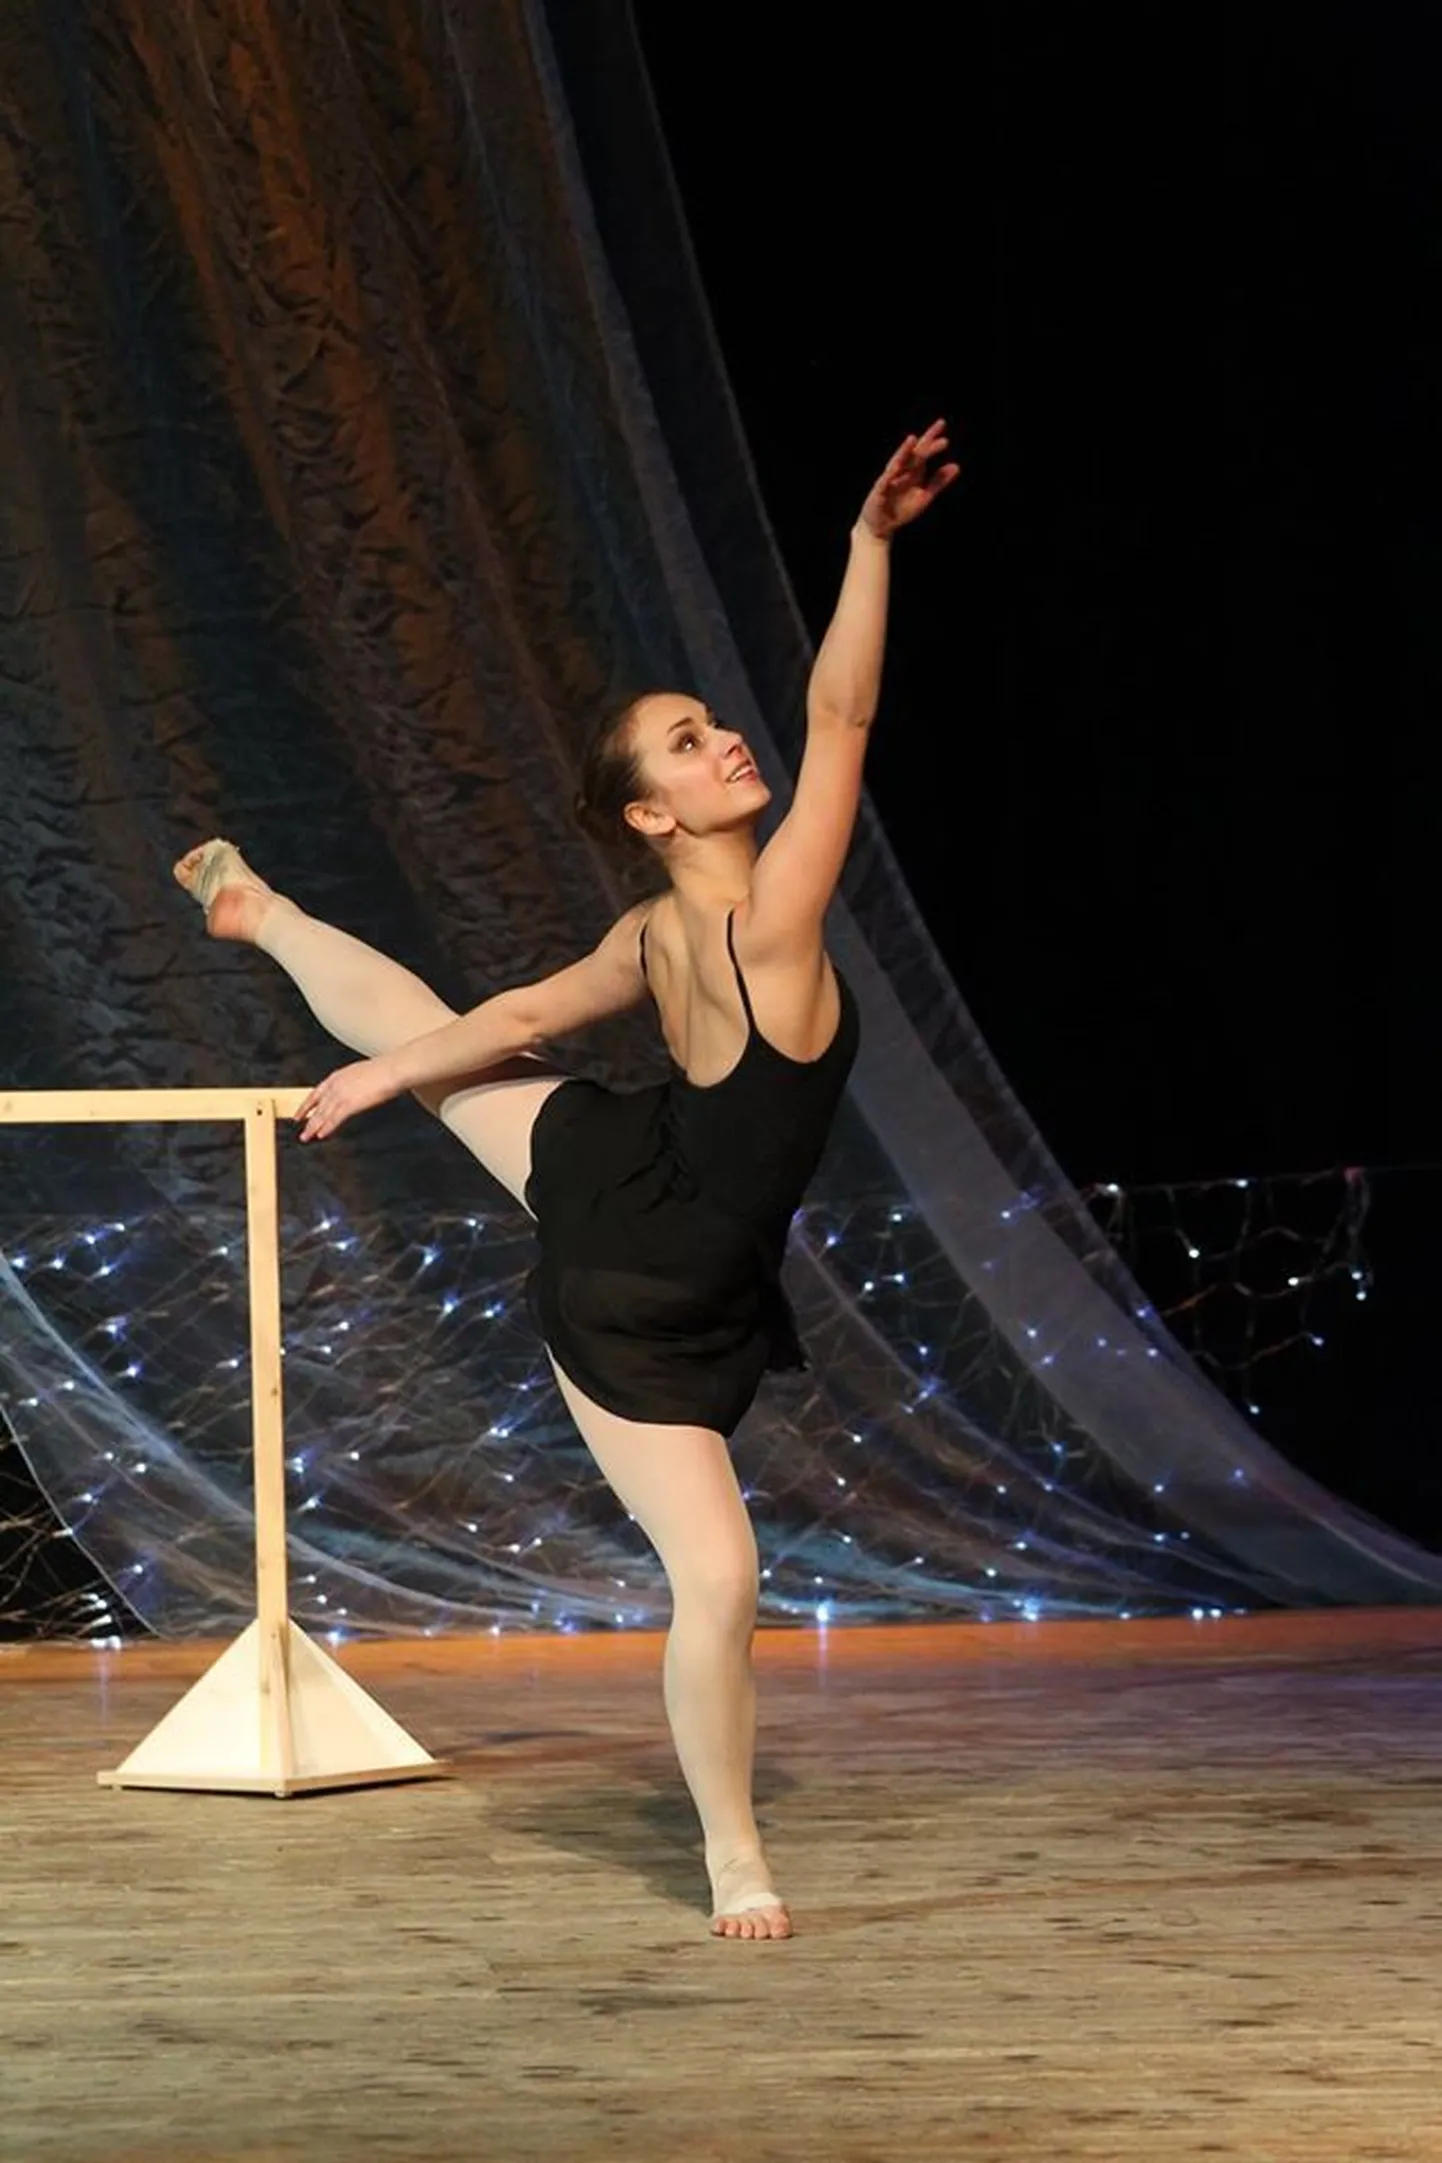 Lisbet Neering tantsib Viljandi balletistuudios. Pilt on tehtud Poola festivalil.